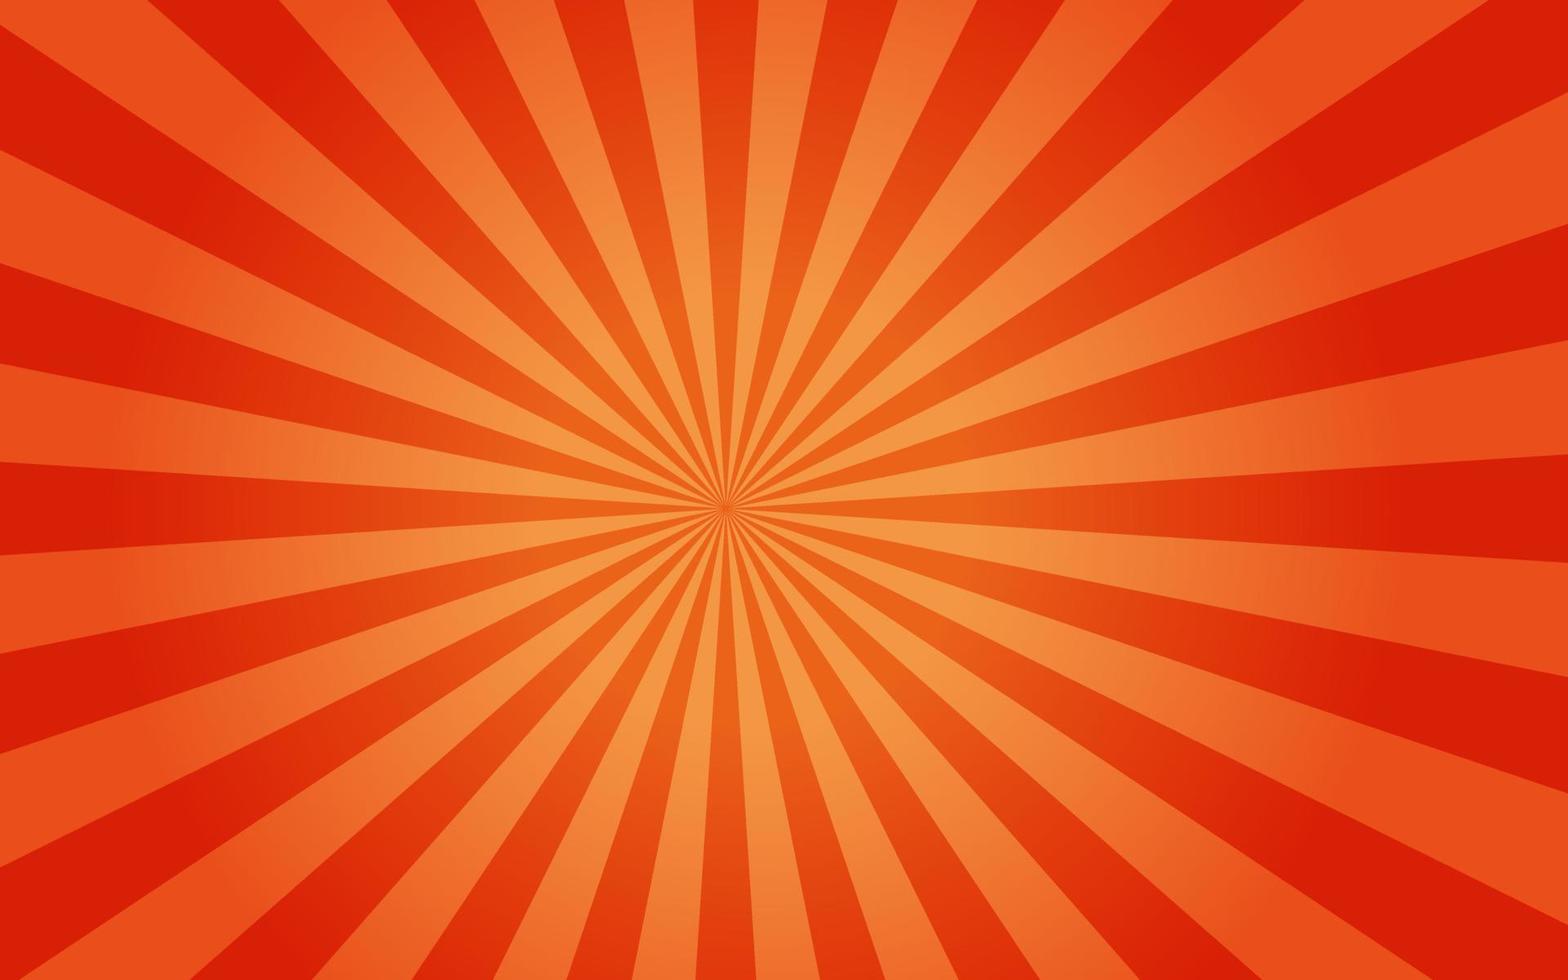 Sonnenstrahlen im Retro-Vintage-Stil auf orangefarbenem Hintergrund, Sunburst-Musterhintergrund. Strahlen. Sommer-Banner-Vektor-Illustration. abstrakte Sunburst-Tapete für Template-Business-Social-Media-Werbung. vektor